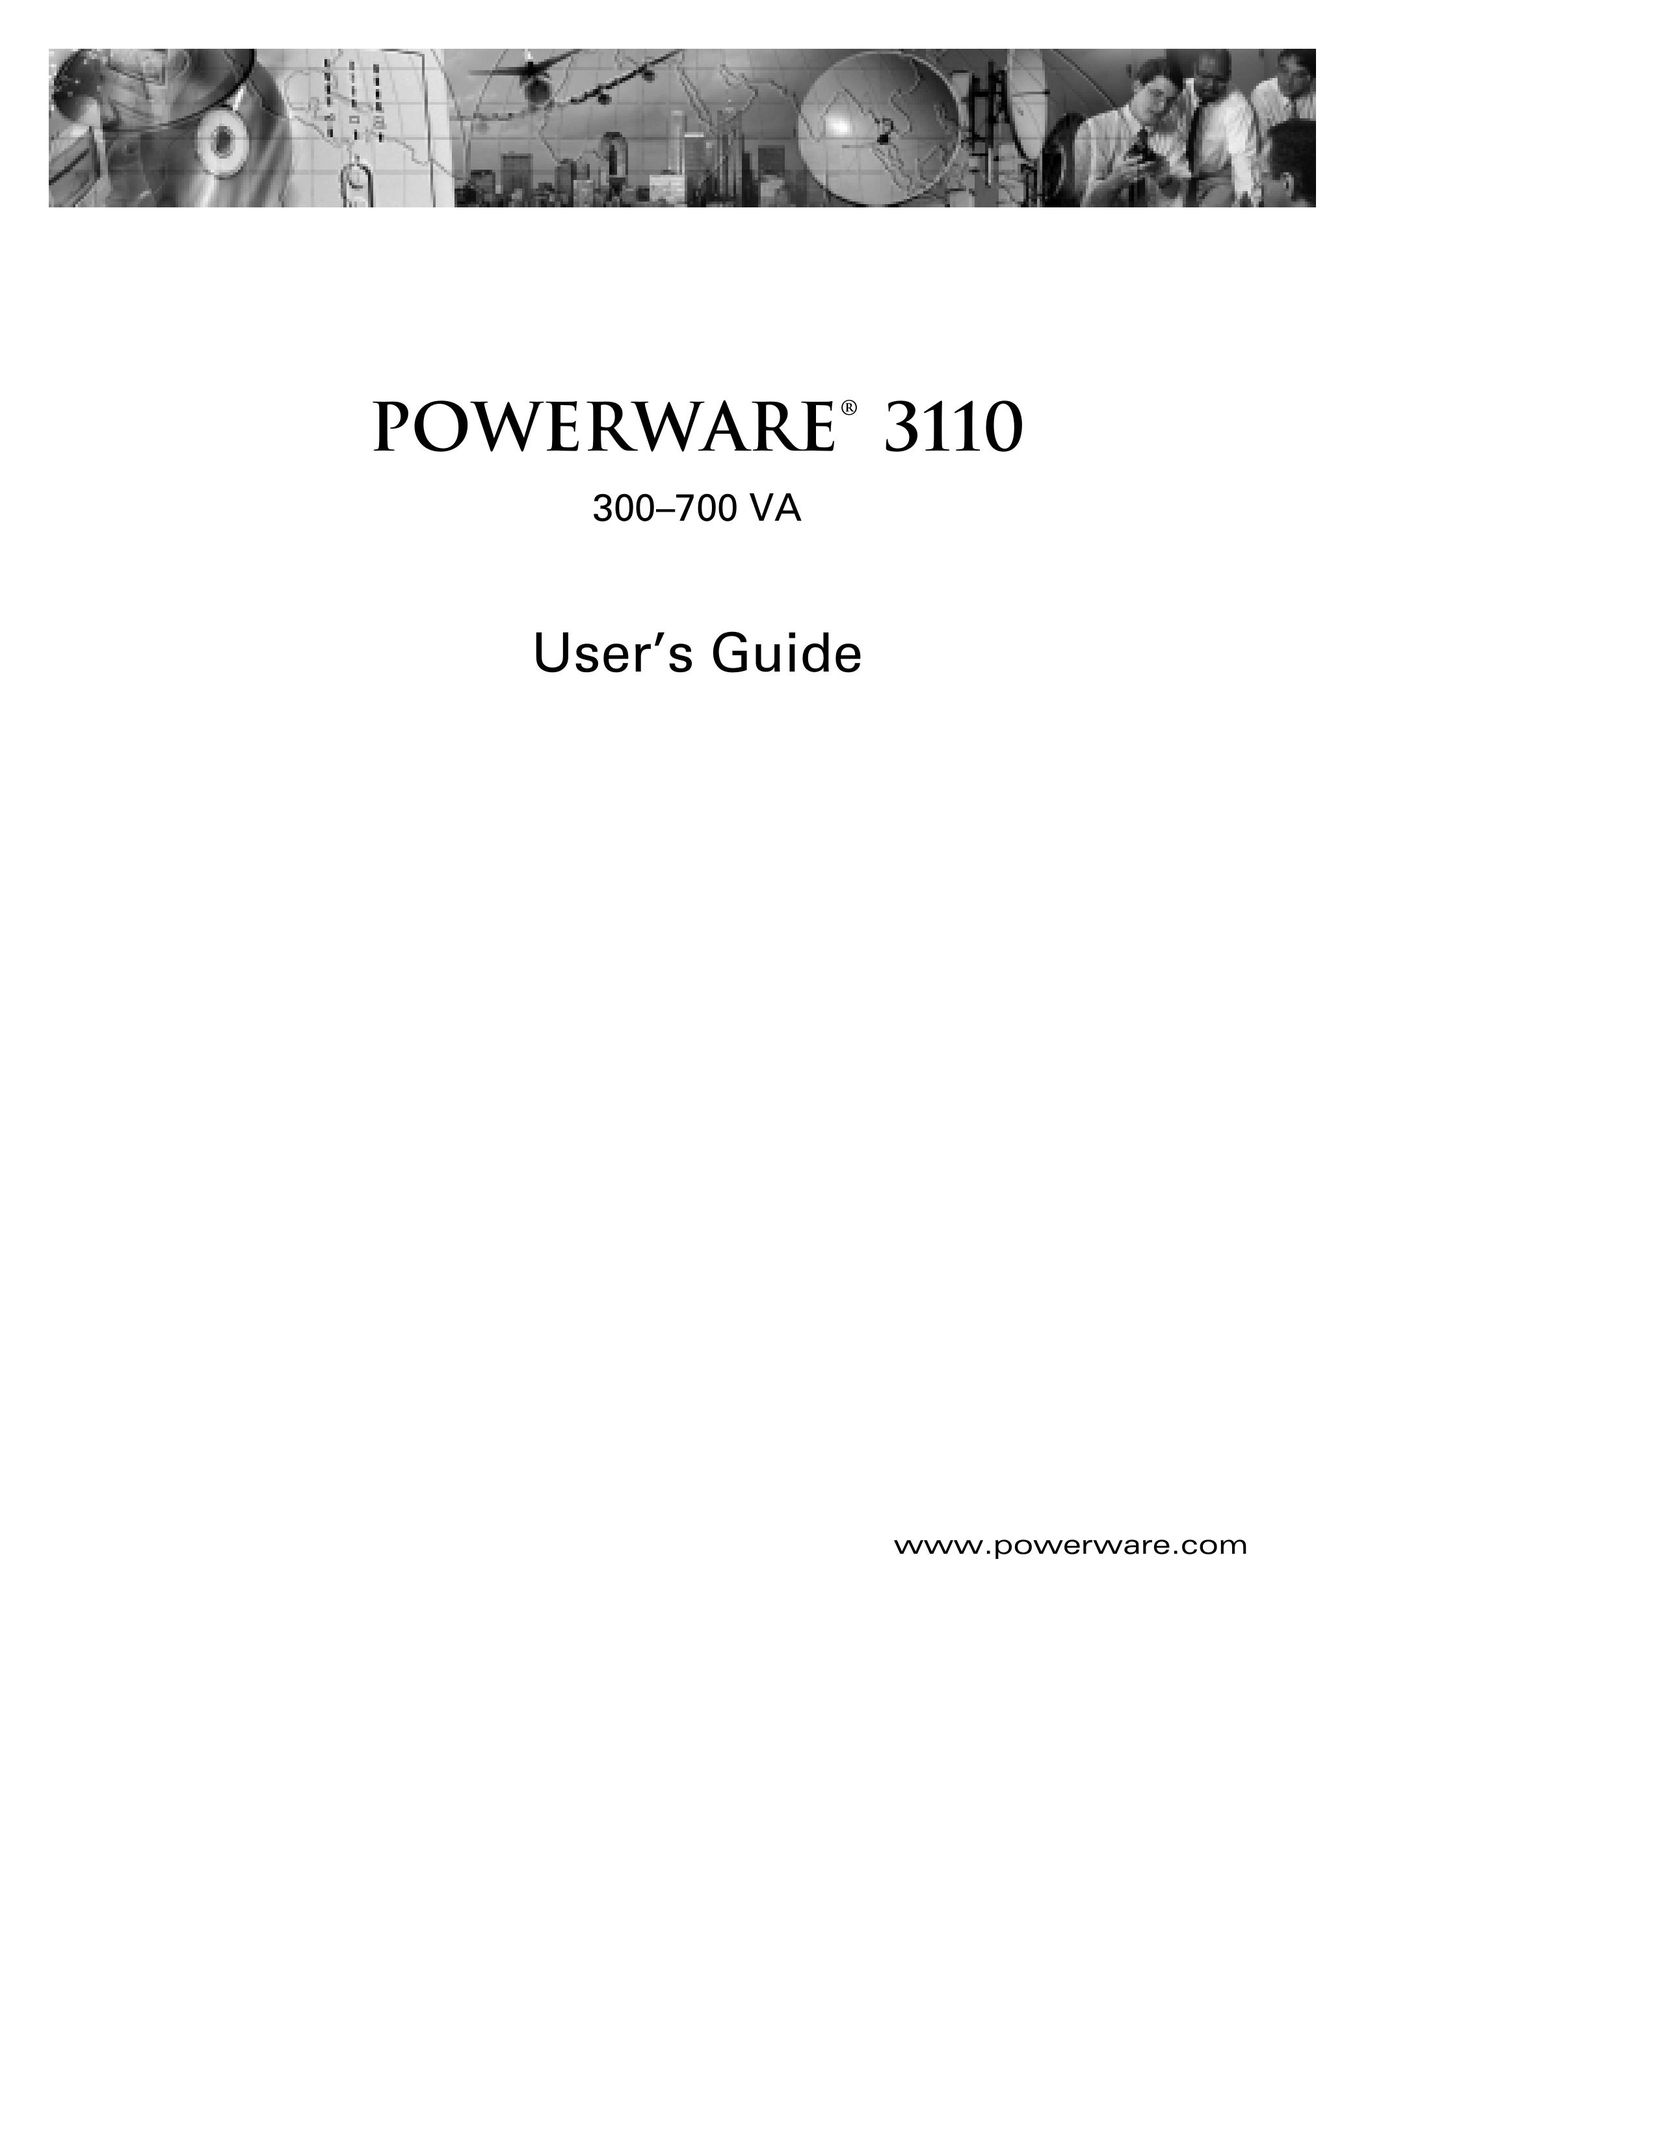 Powerware 300 VA Network Card User Manual